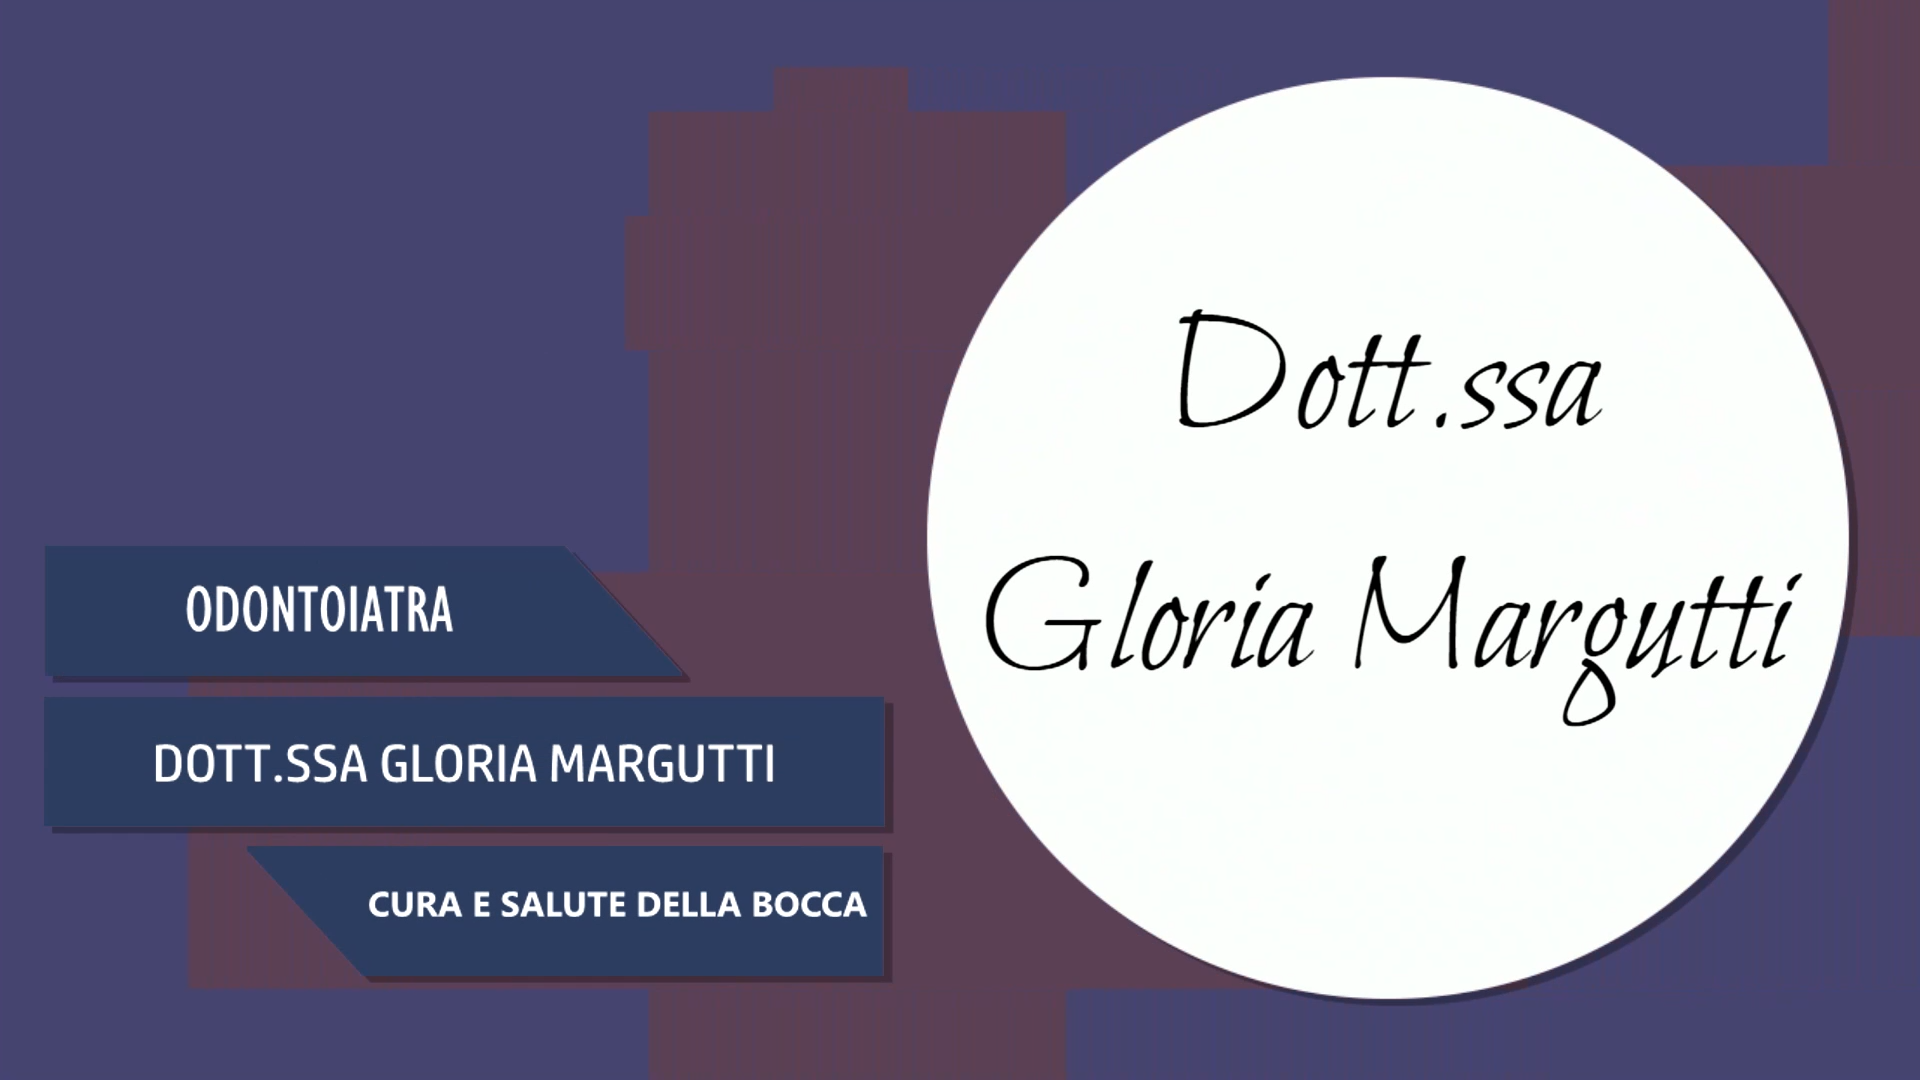 Intervista alla Dott.ssa Gloria Margutti – Cura e salute della bocca